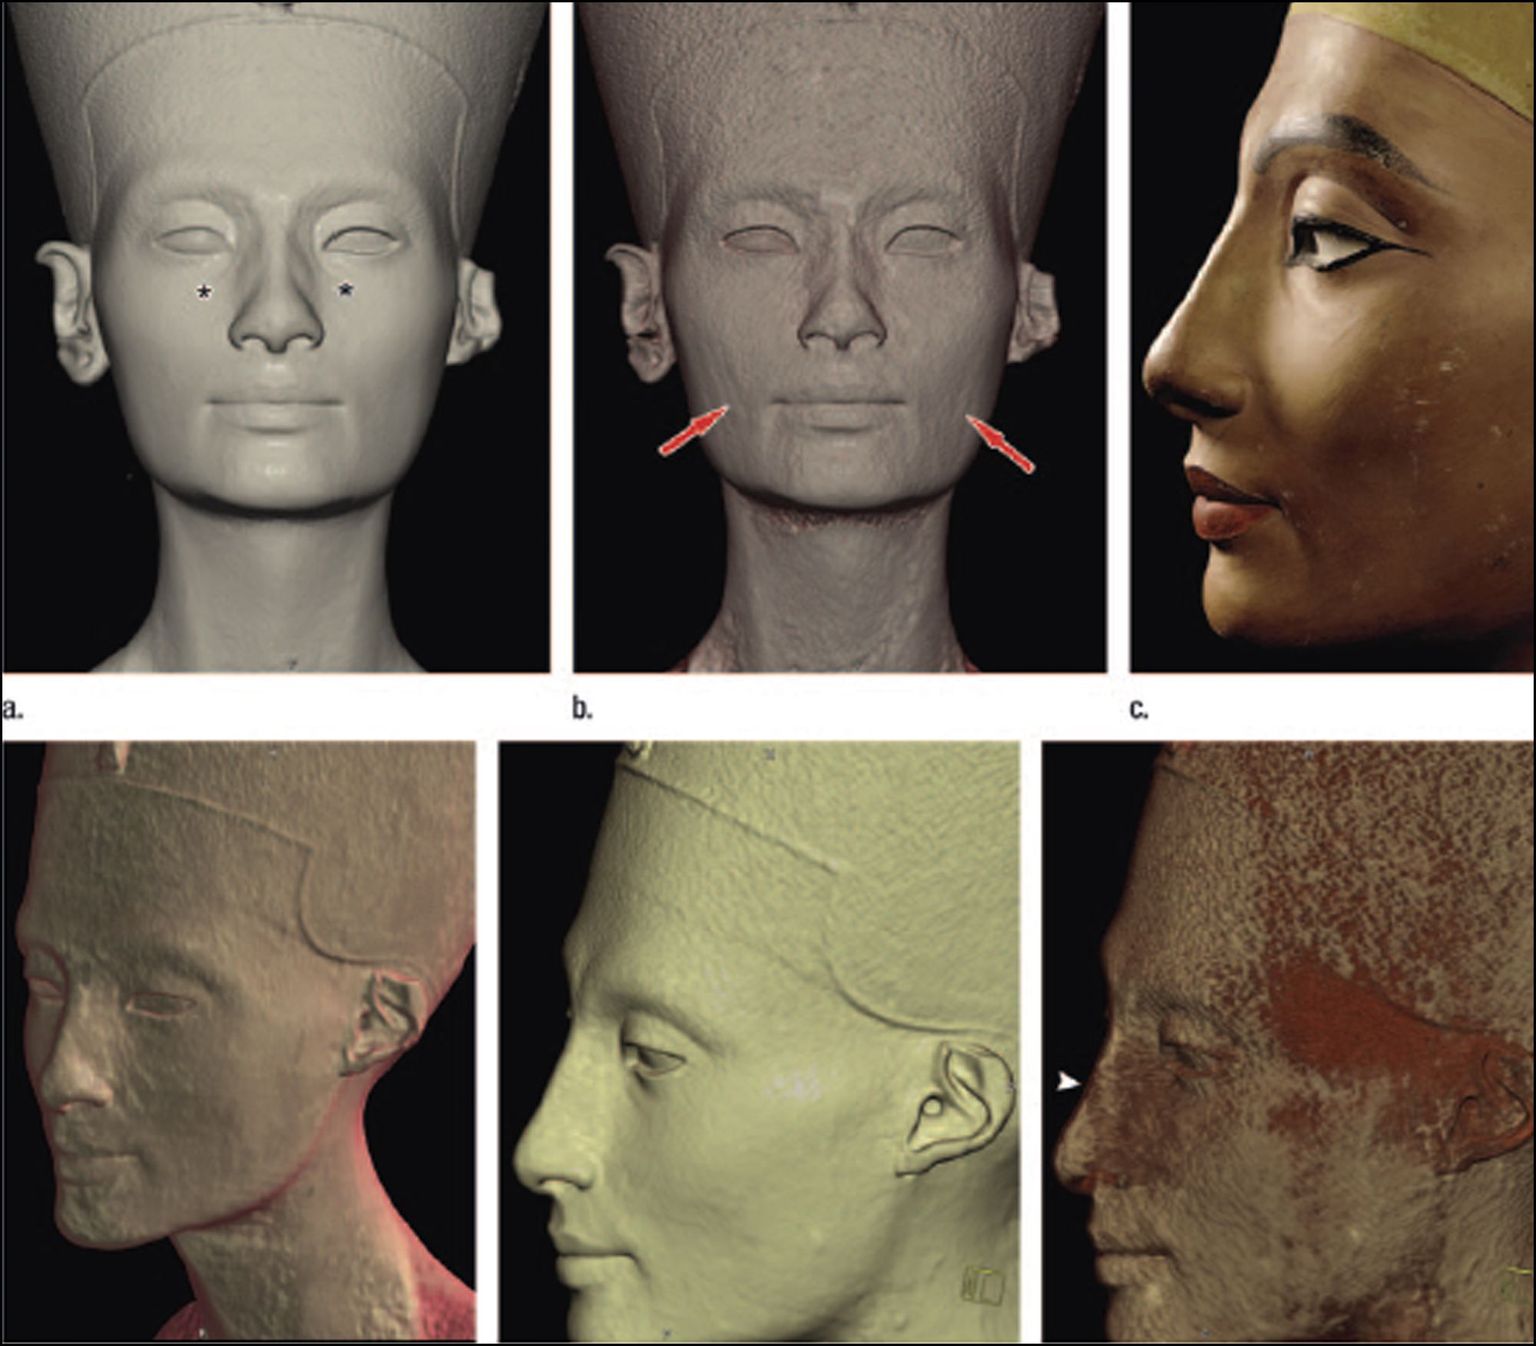 Nofretete büsti uurimisel paljastus, et kujul on kaks nägu